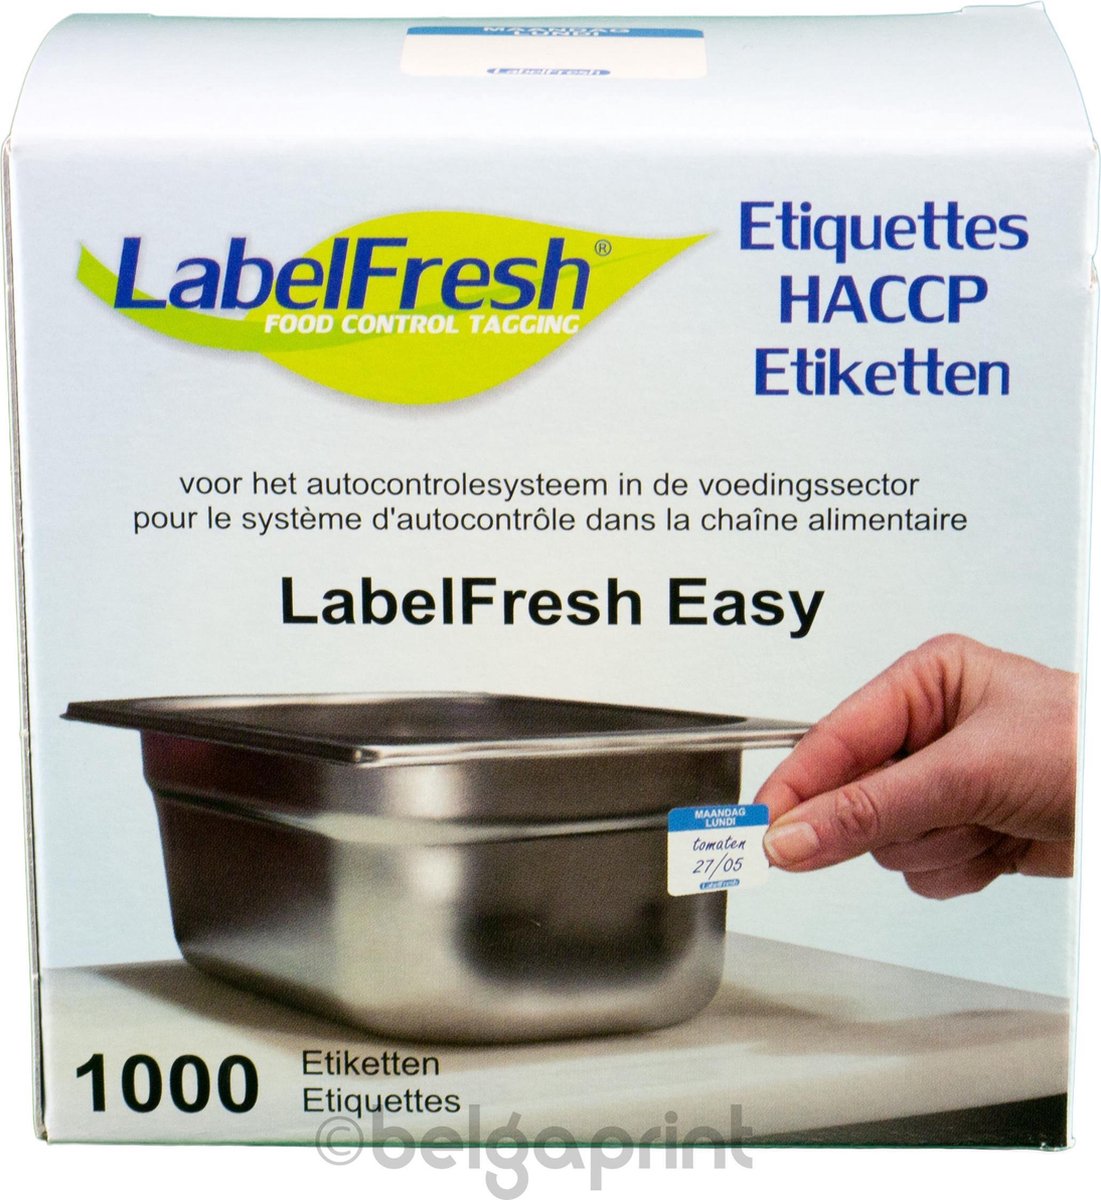 1000 LabelFresh Easy - 30x25 mm - maandag-lundi - HACCP etiketten / stickers